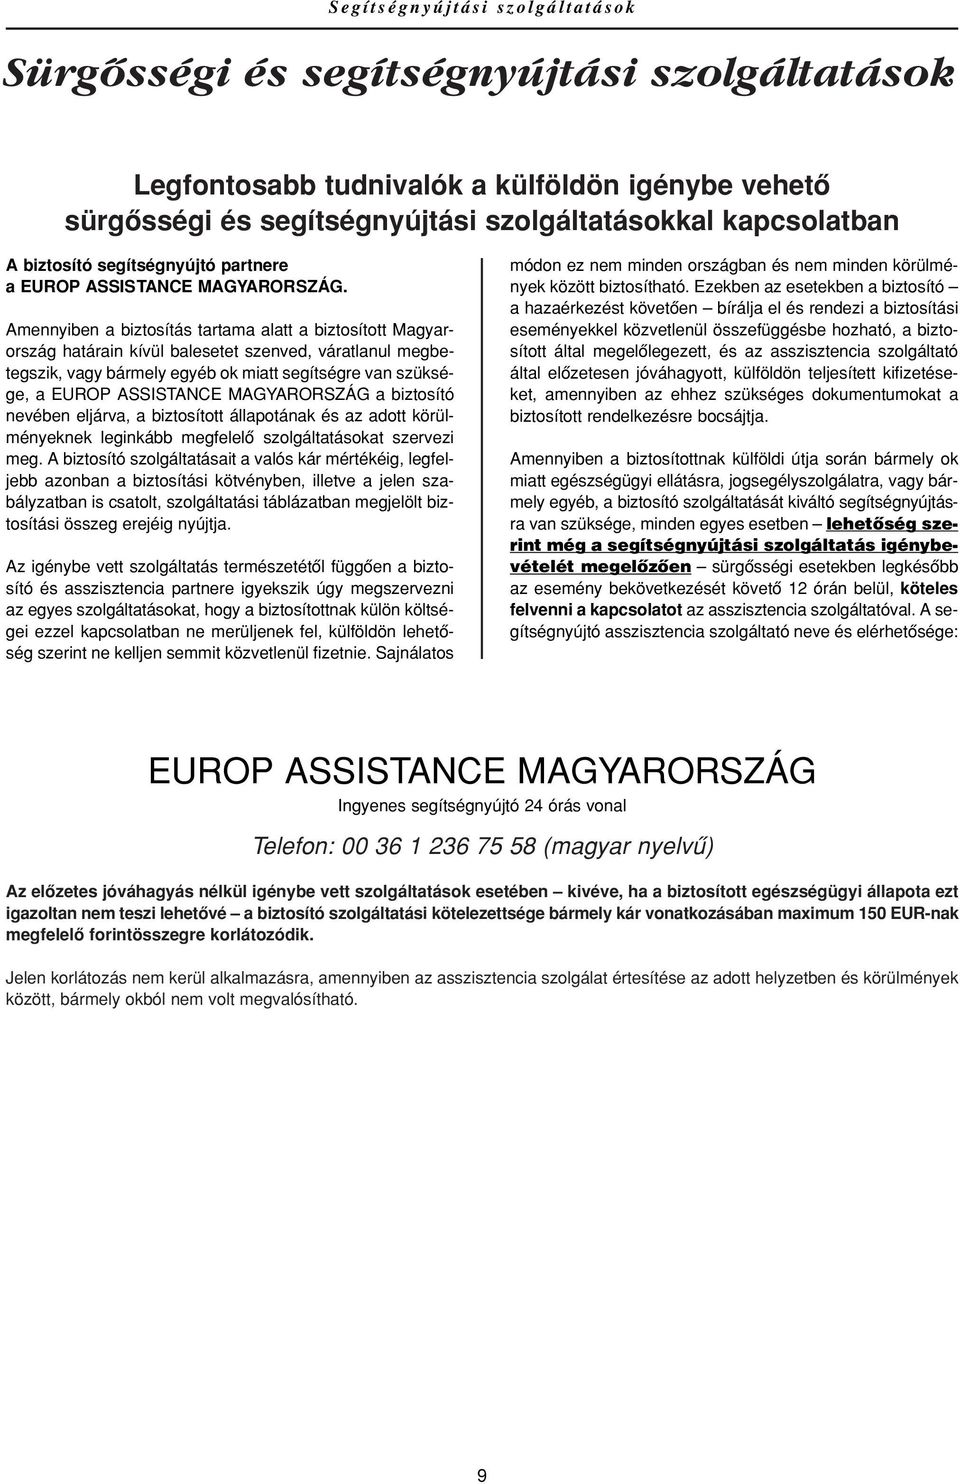 Amennyiben a biztosítás tartama alatt a biztosított Magyarország határain kívül balesetet szenved, váratlanul megbetegszik, vagy bármely egyéb ok miatt segítségre van szüksége, a EUROP ASSISTANCE